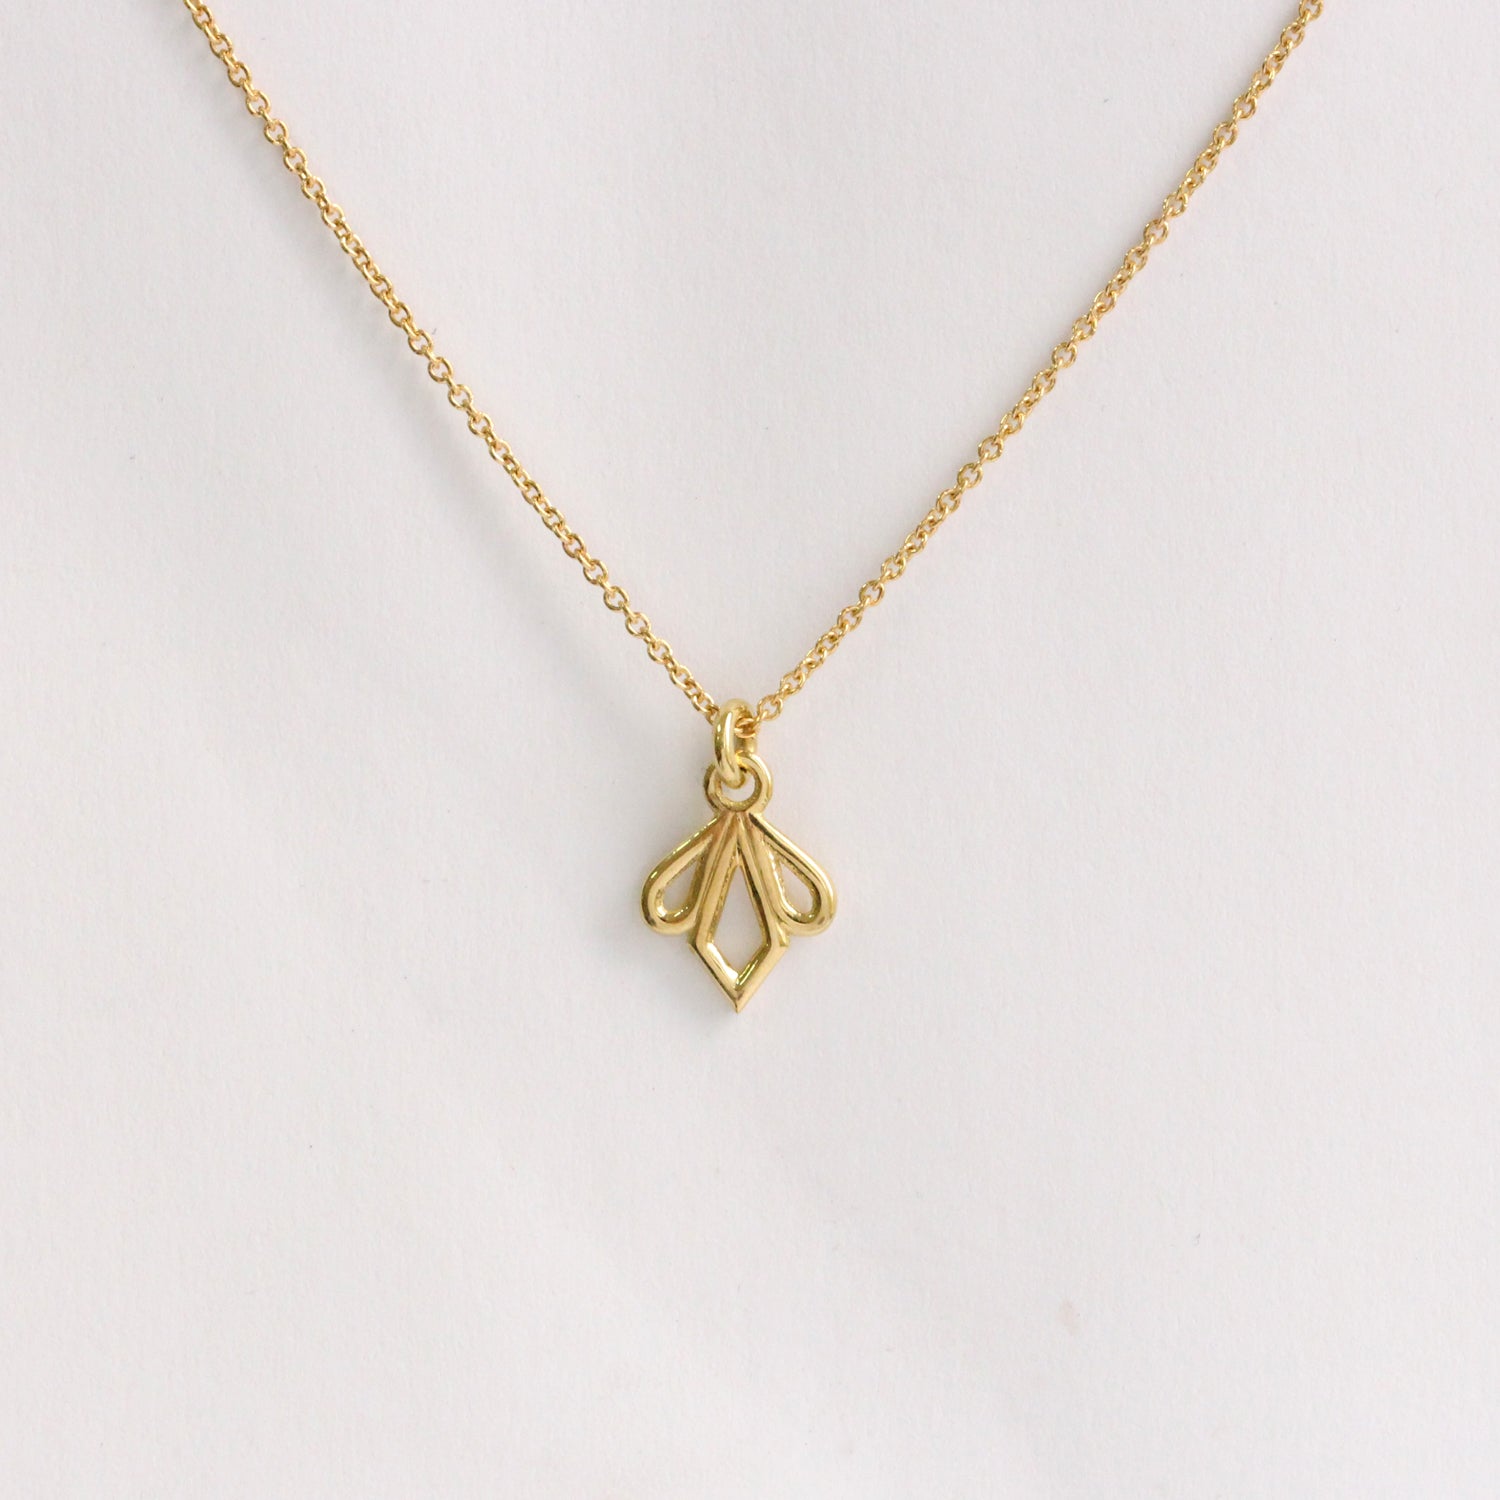 Gold necklace crown emilia